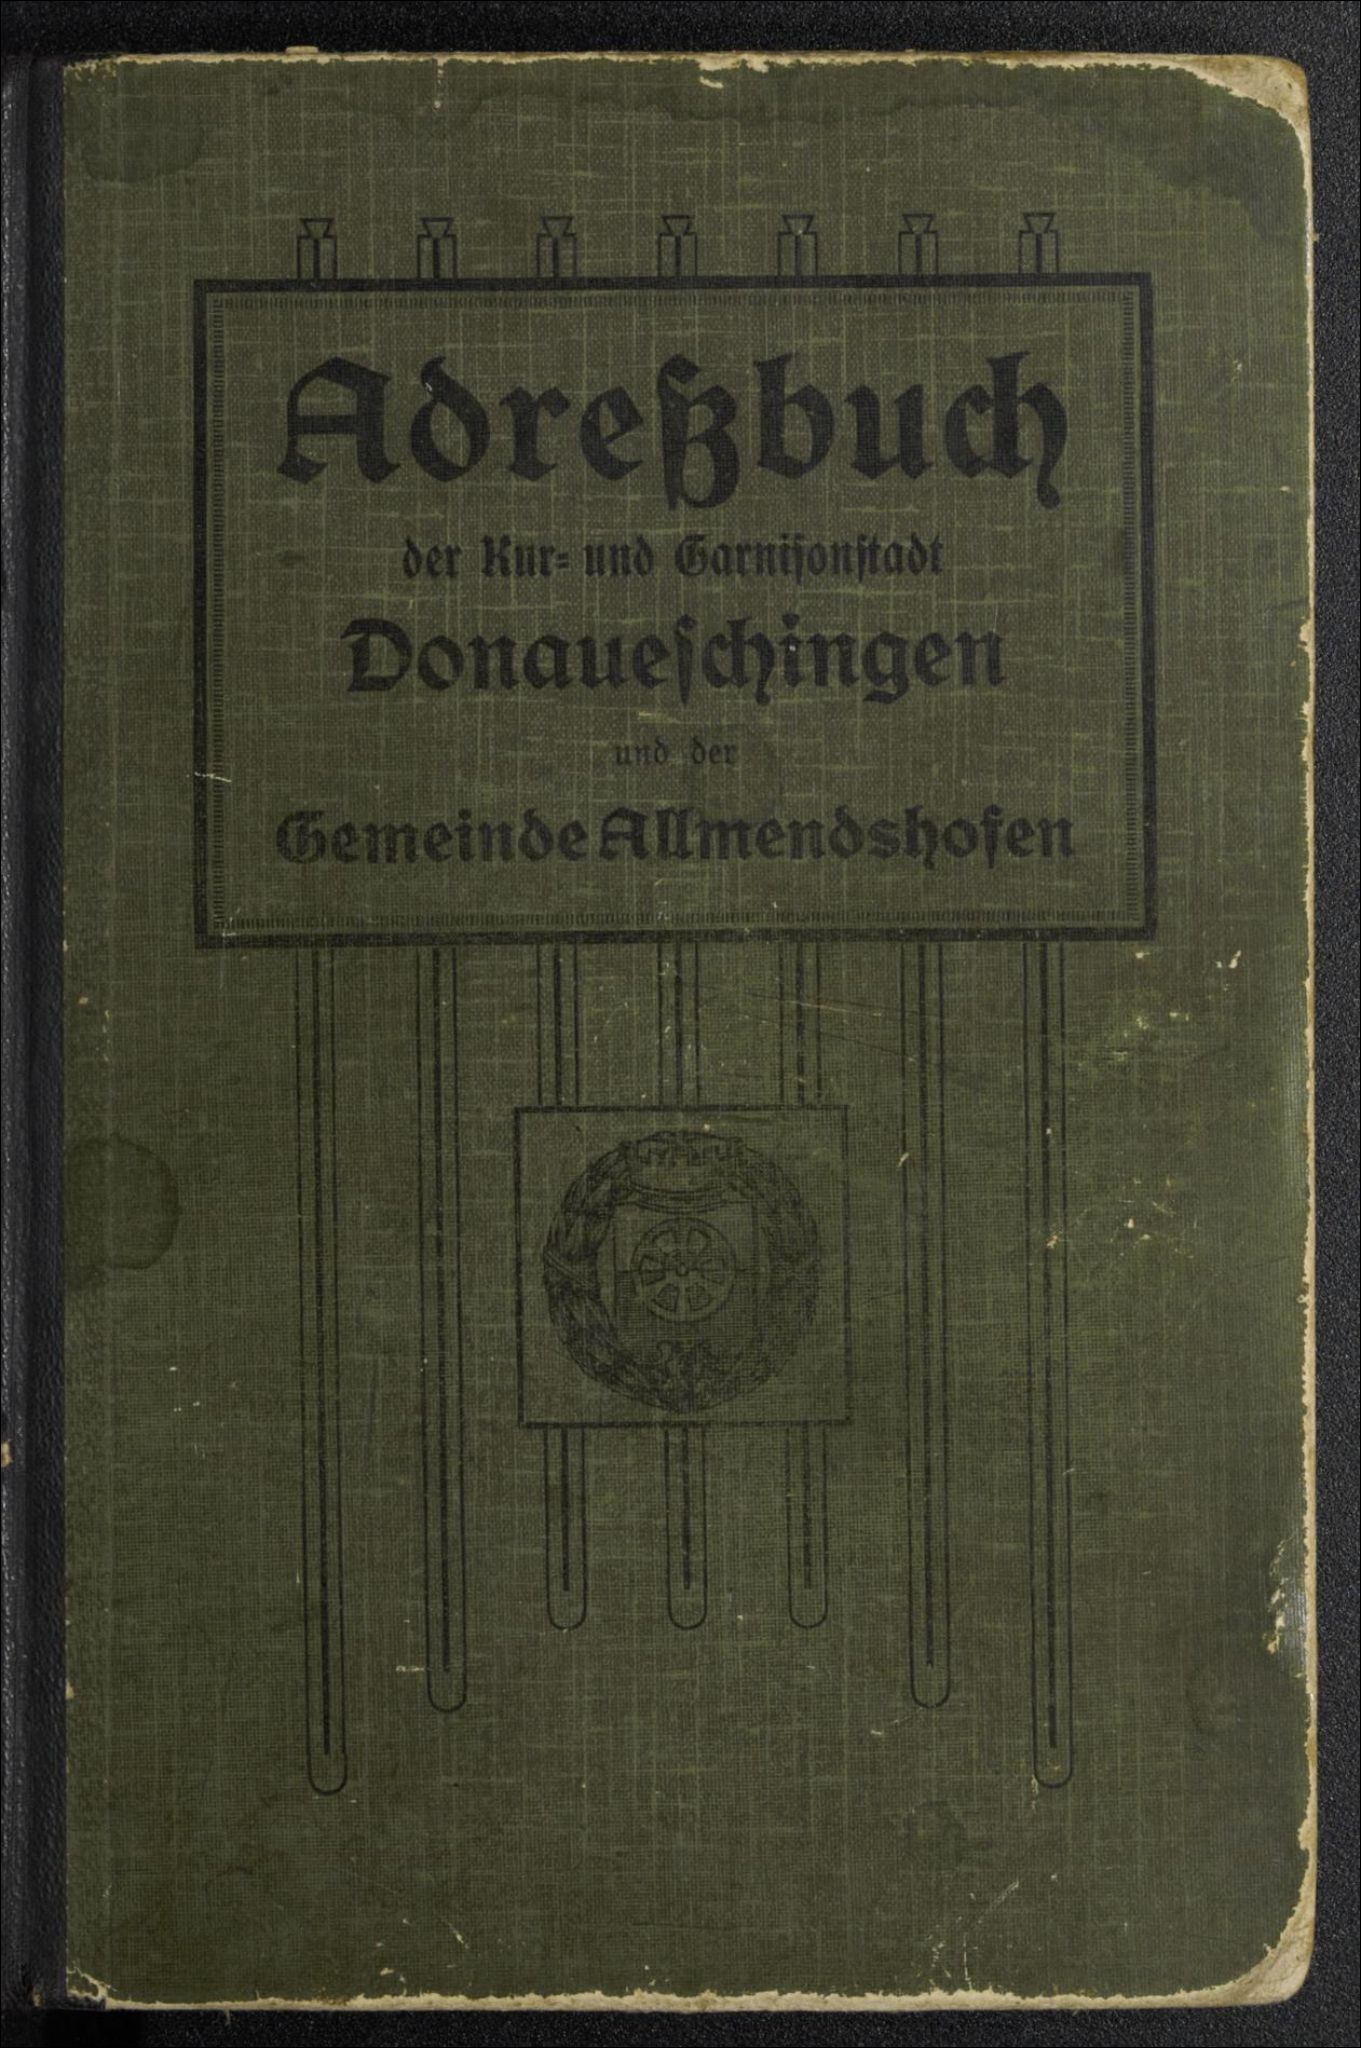 Adreß- und Geschäfts-Handbuch der Kur- und Garnisonstadt Donaueschingen und der Gemeinde Allmendshofen 1913